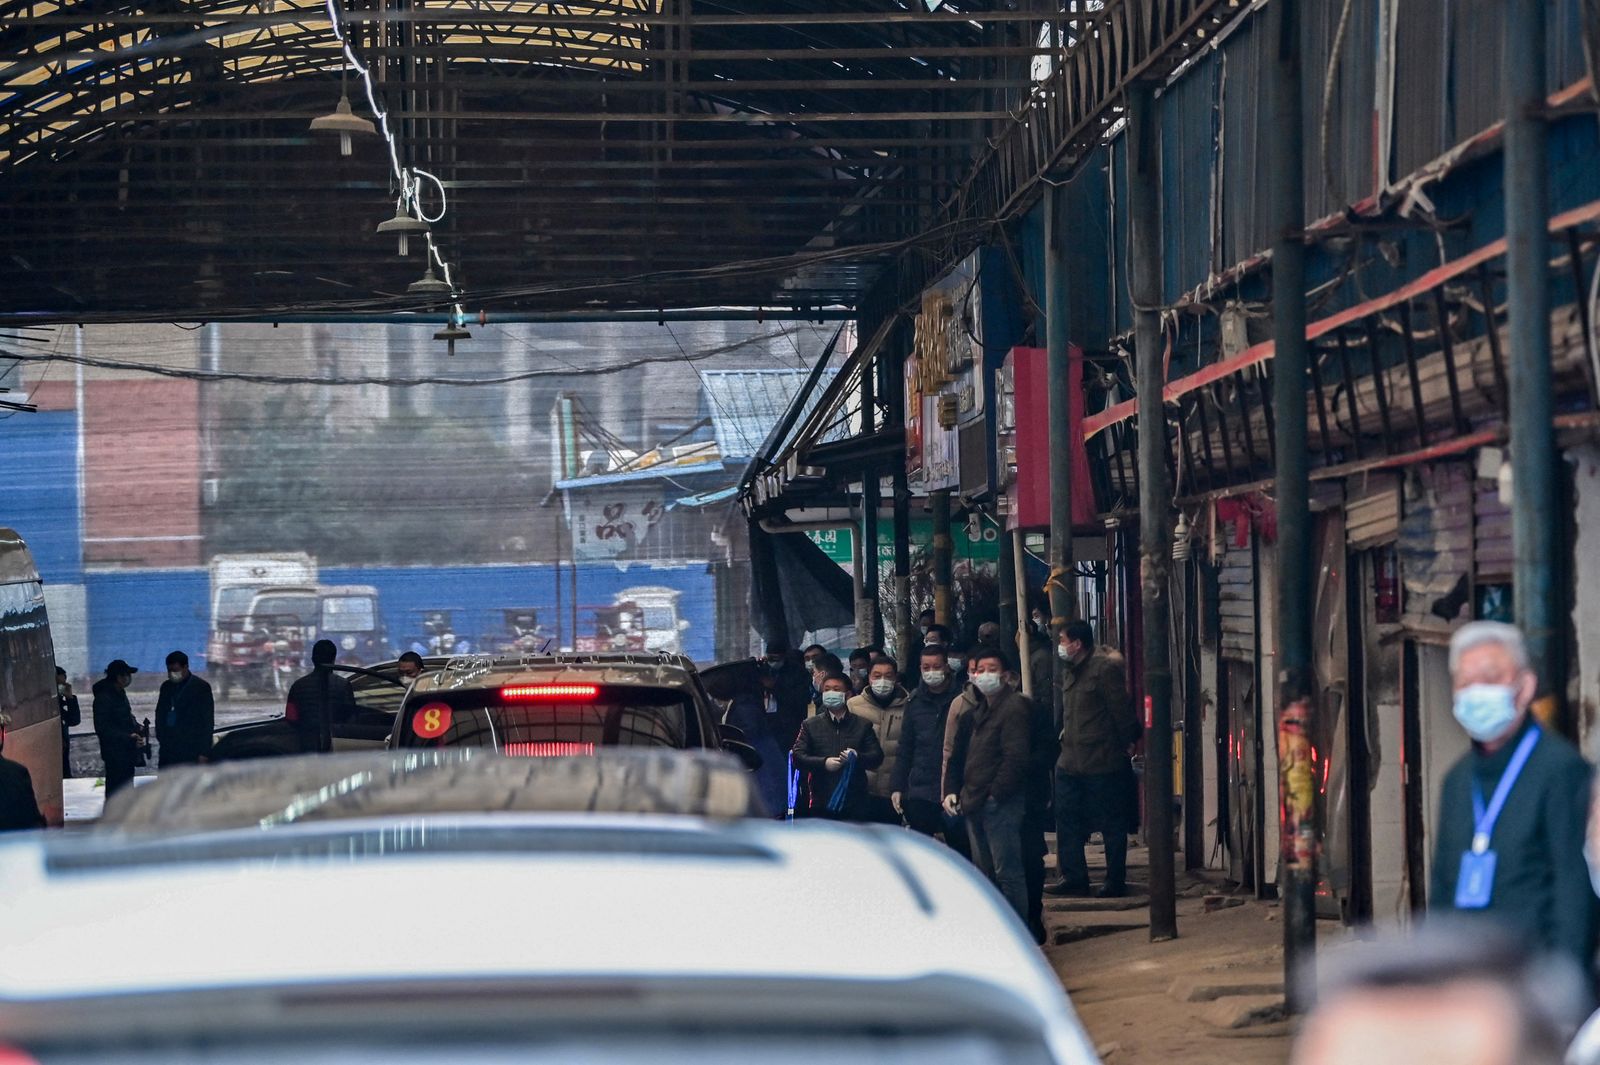 أعضاء فريق التحقيق الأممي يصلون بسياراتهم إلى سوق هوانان المغلق في ووهان - 31 يناير 2021 - AFP